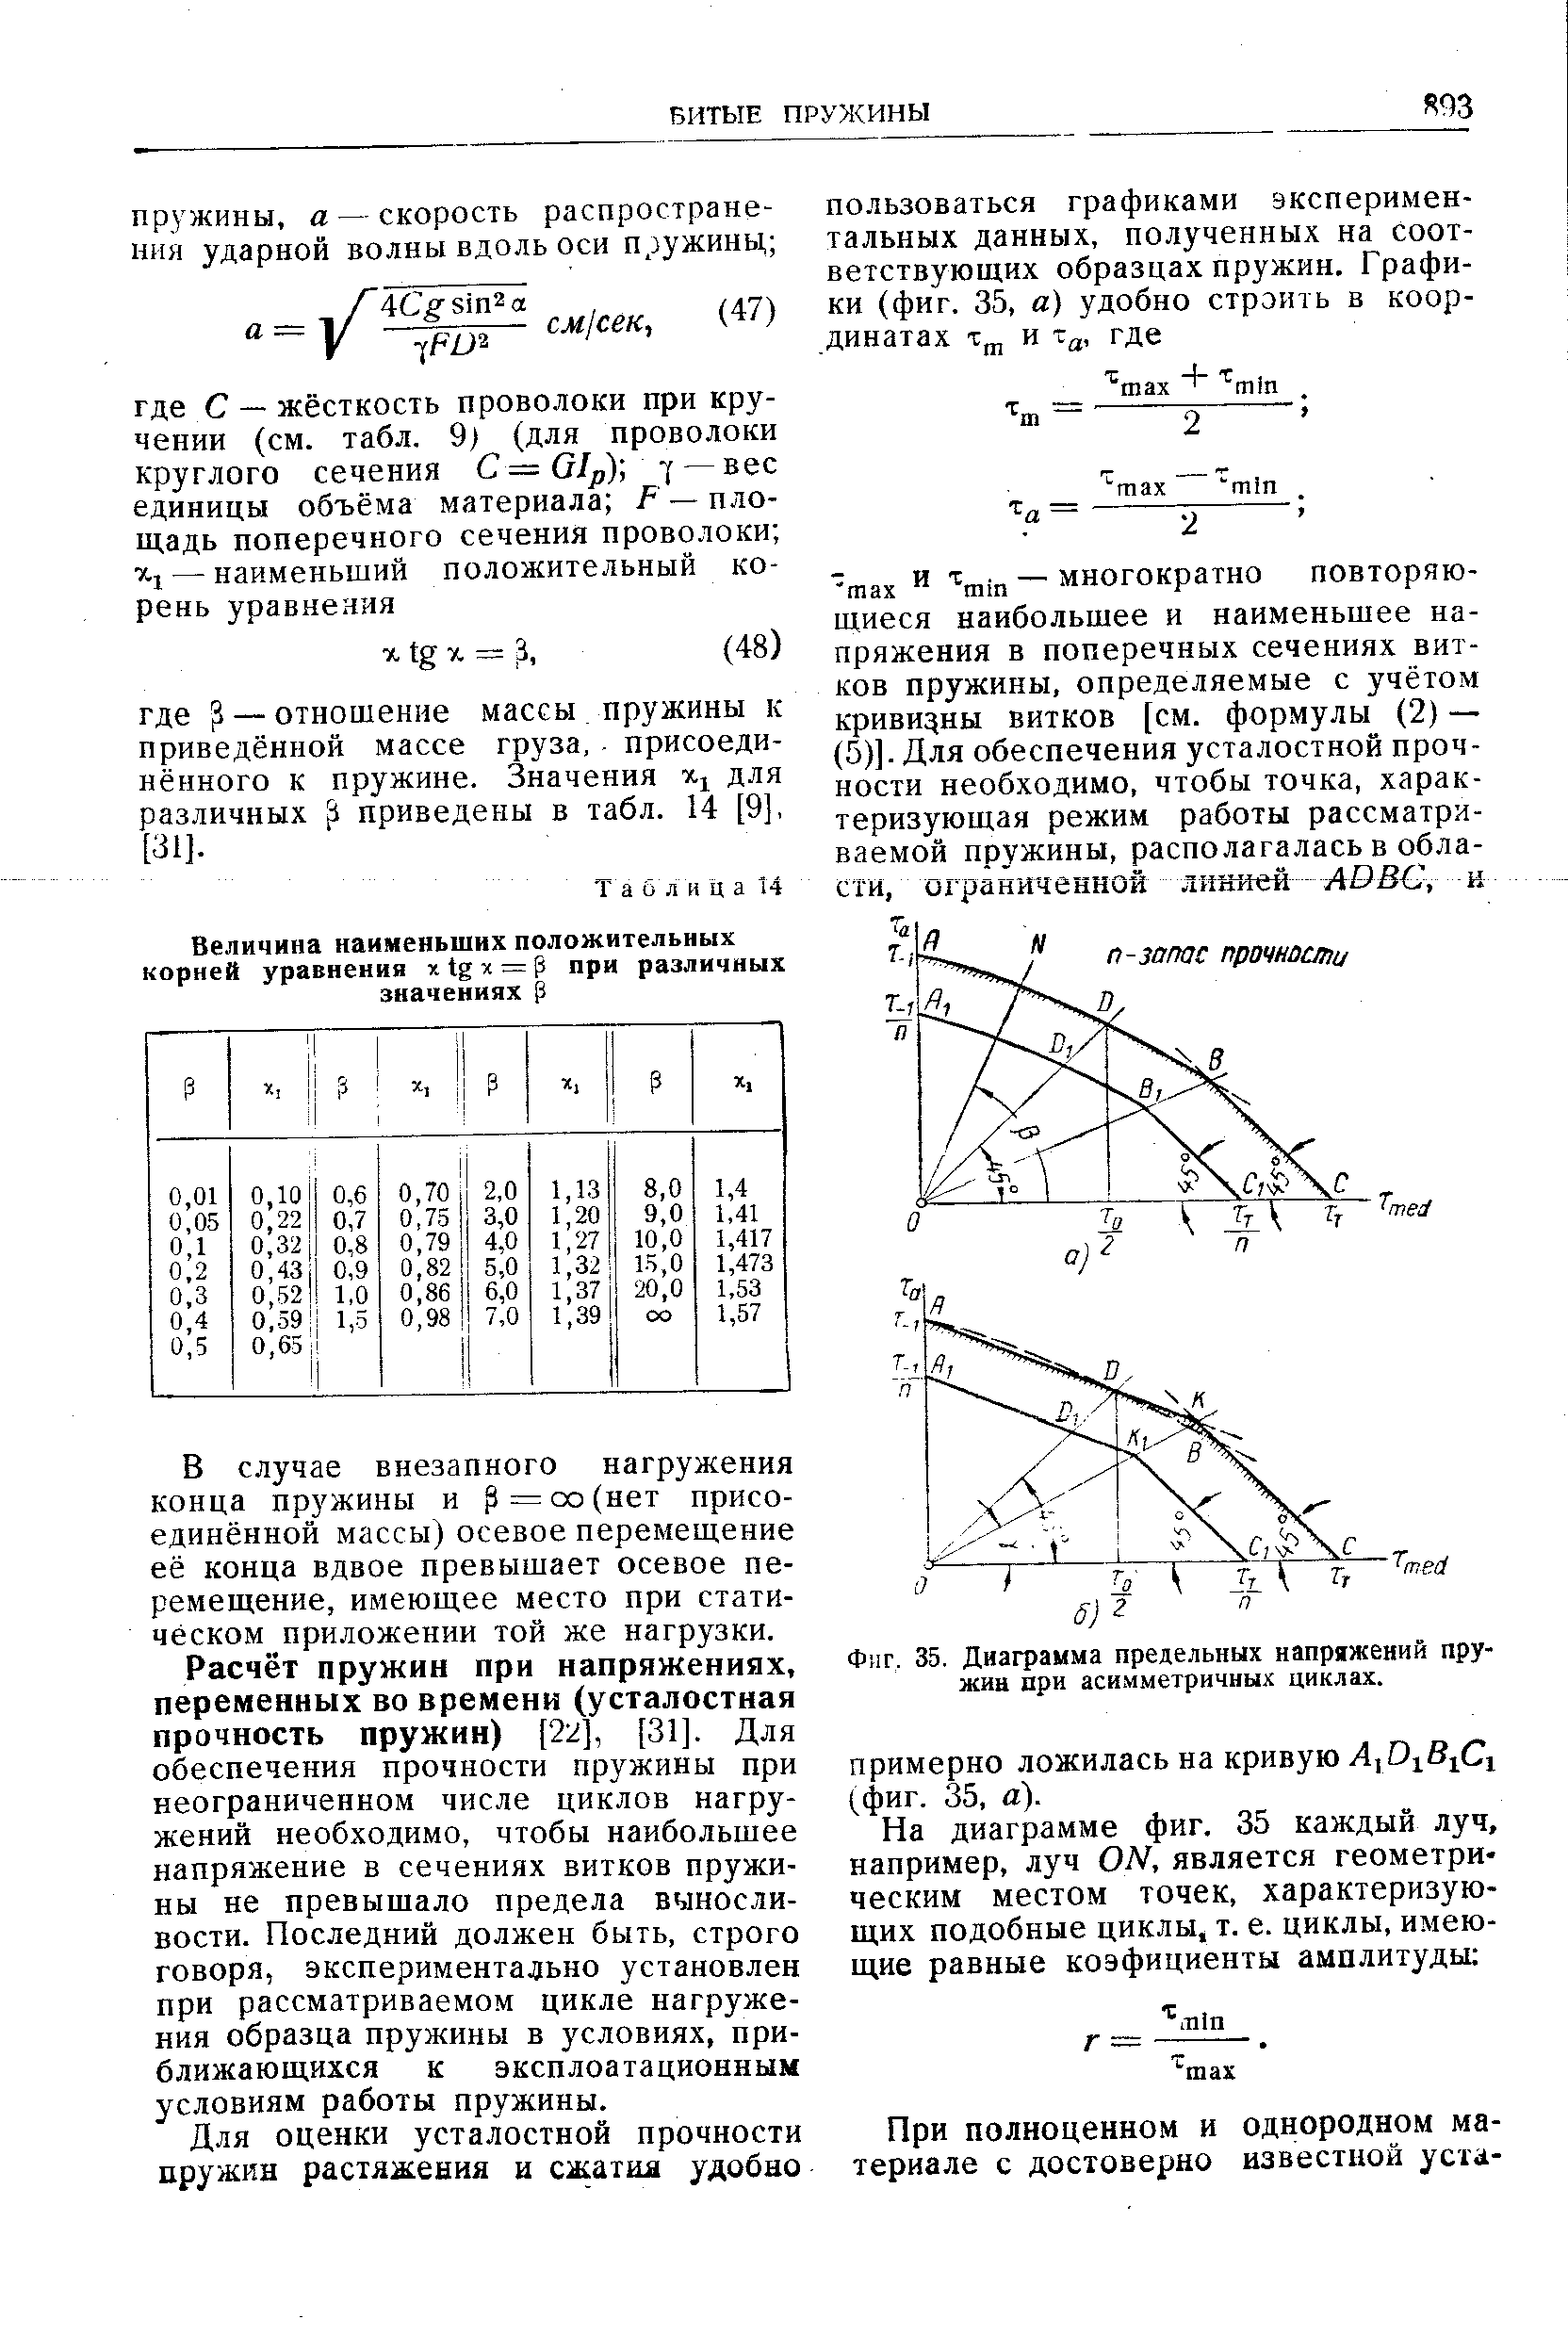 Фиг. 35. Диаграмма предельных напряжений пружин дри асимметричных циклах.
